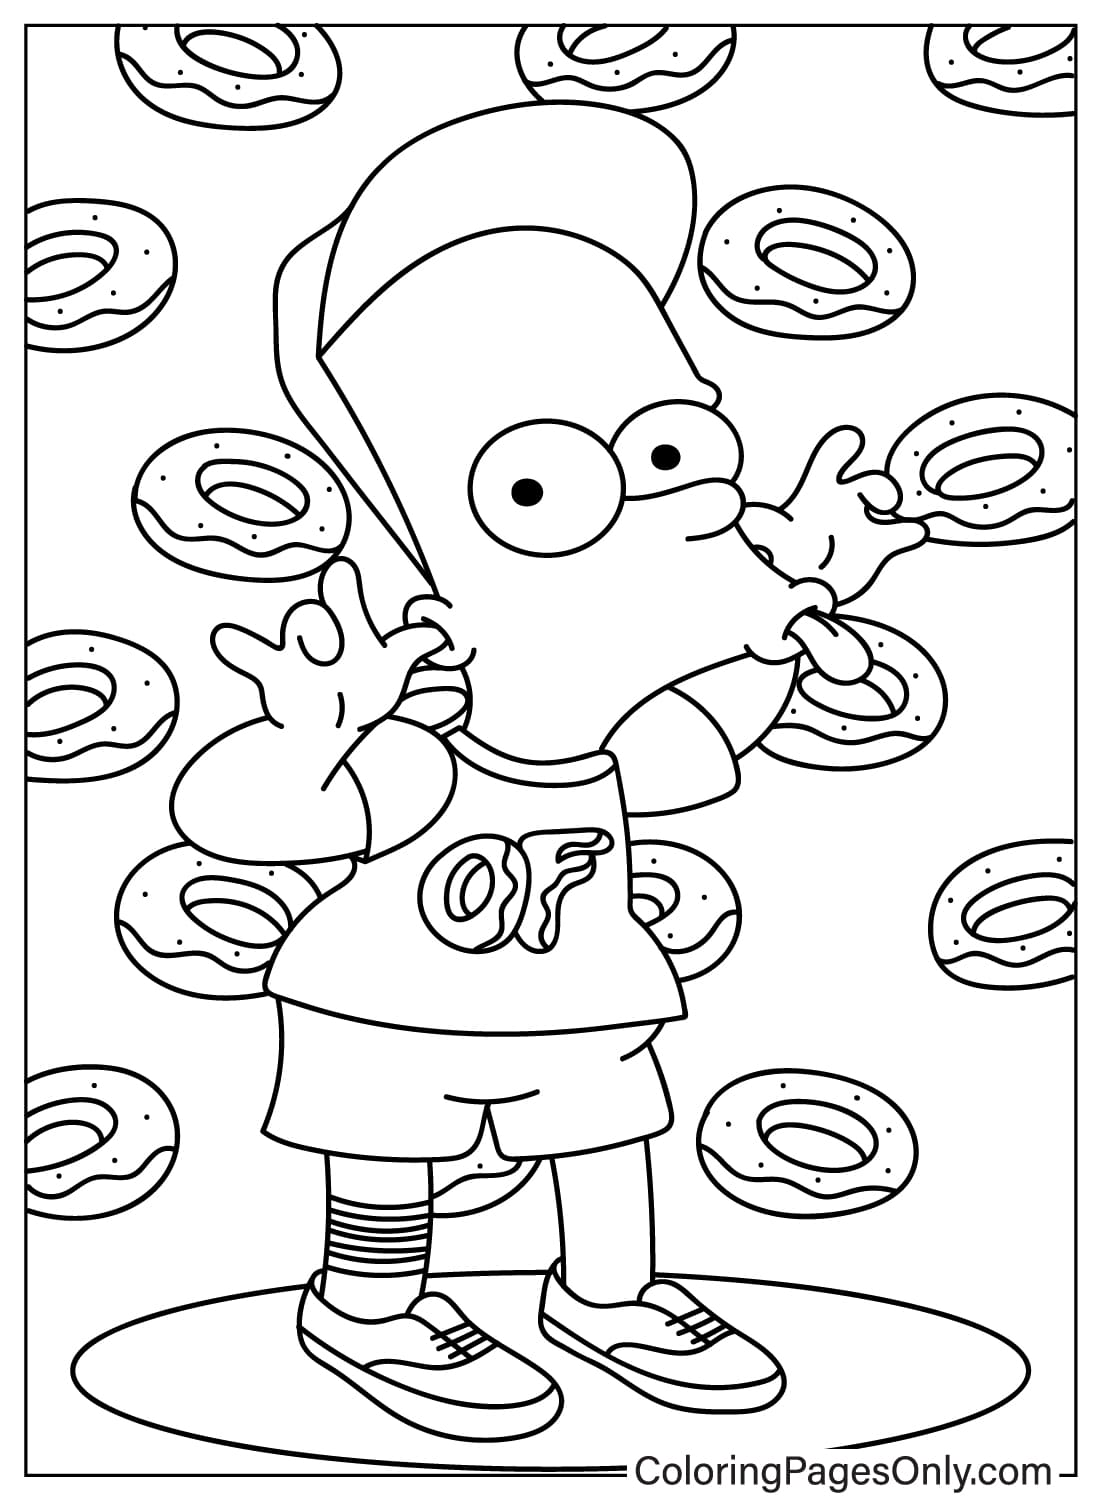 Página para colorear gratis de Bart de Los Simpson